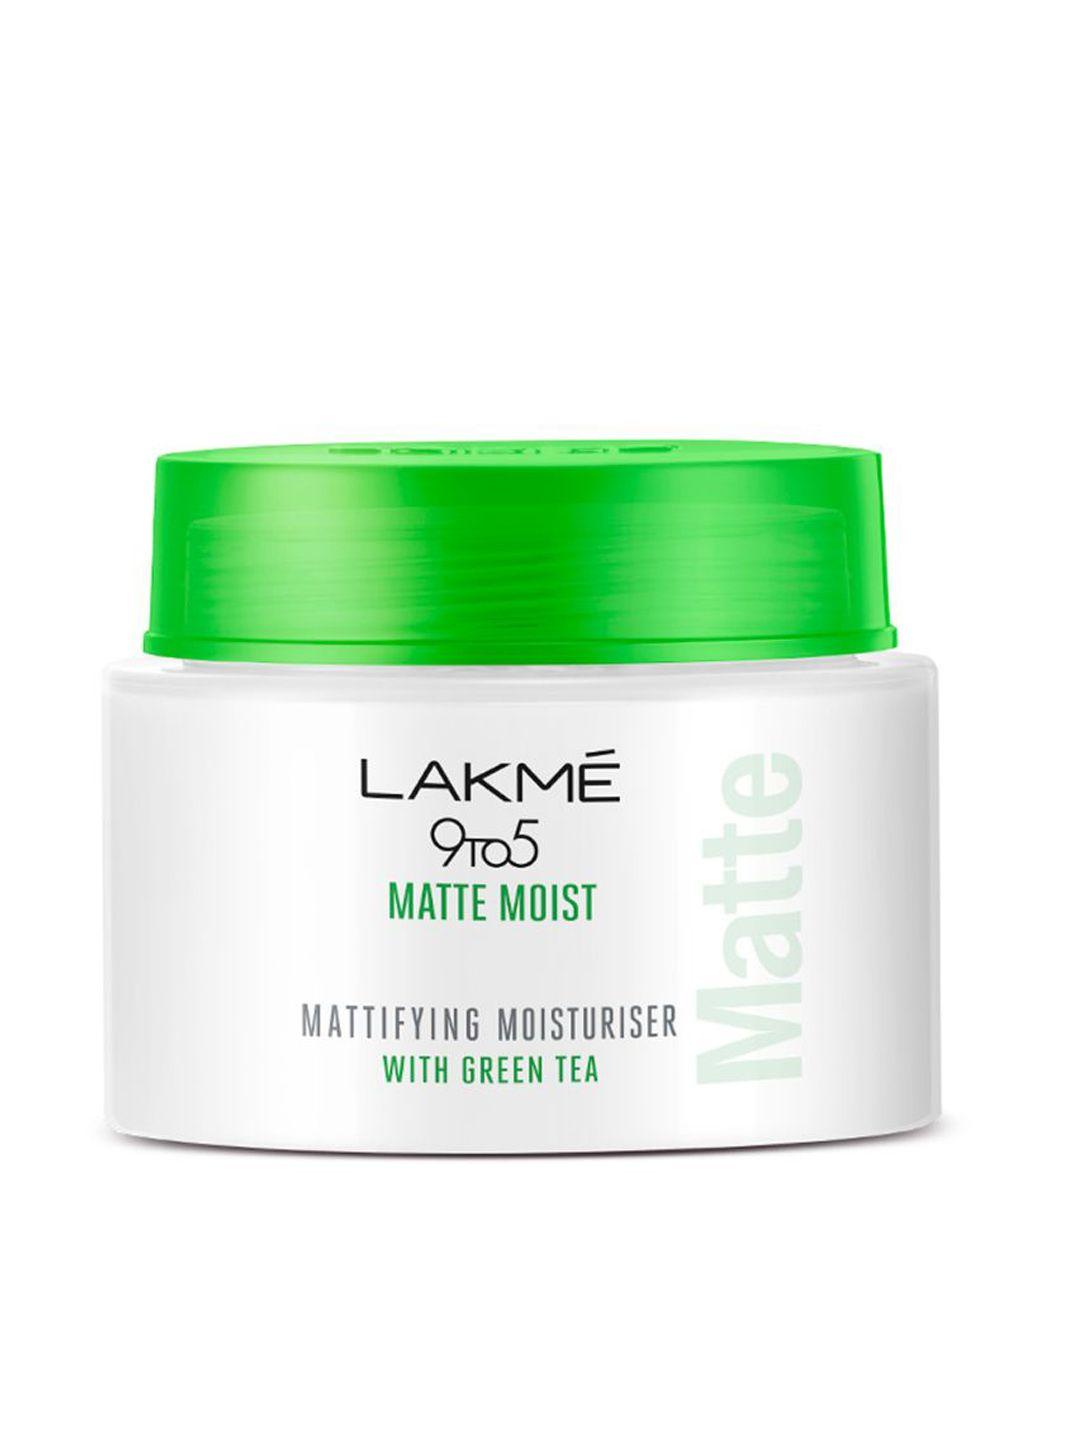 lakme 9 to 5 matte moist mattifying moisturiser with green tea- 50 g